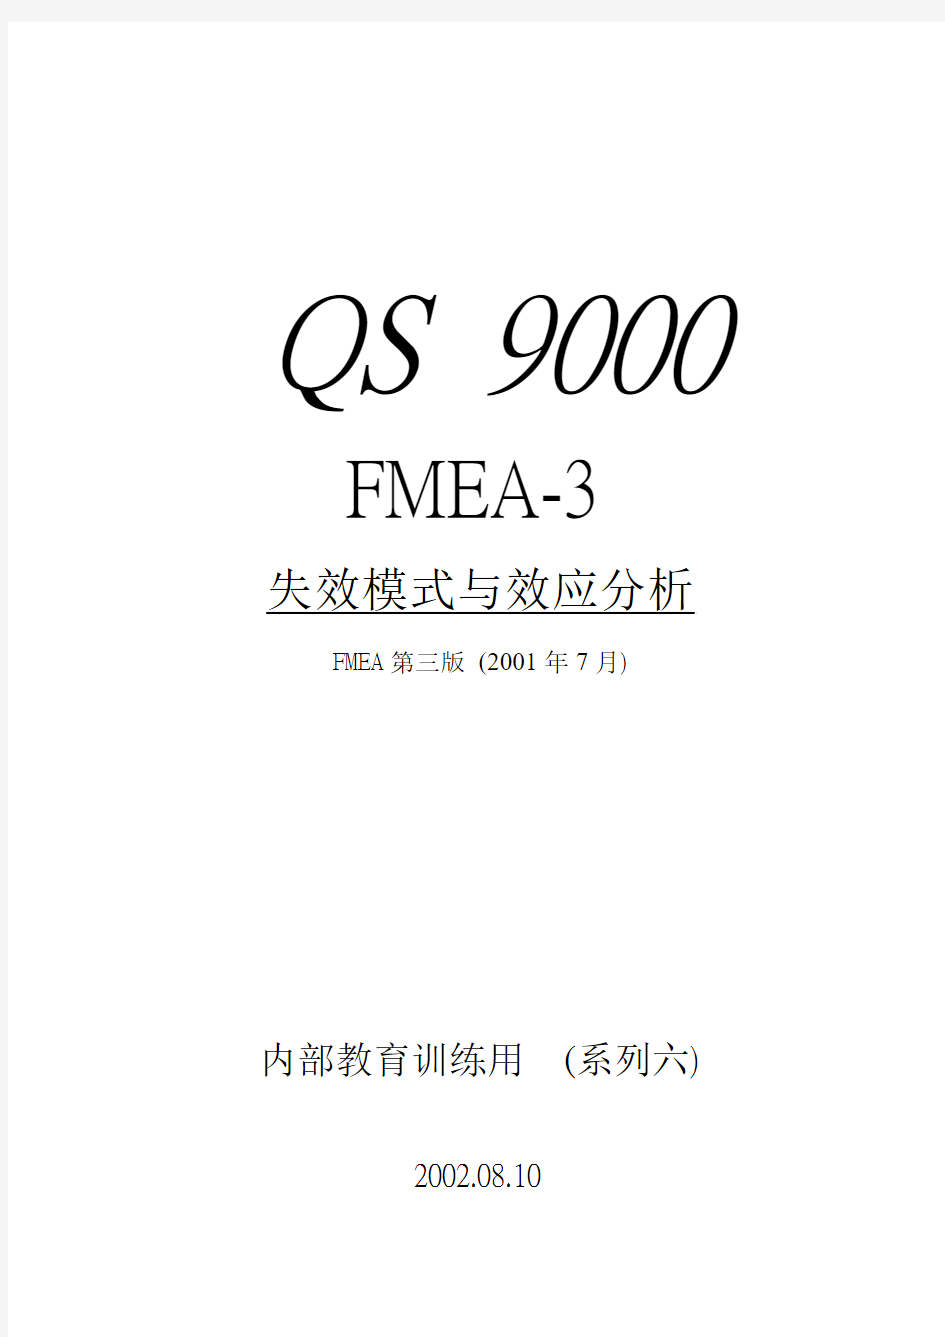 QS9000中FMEA